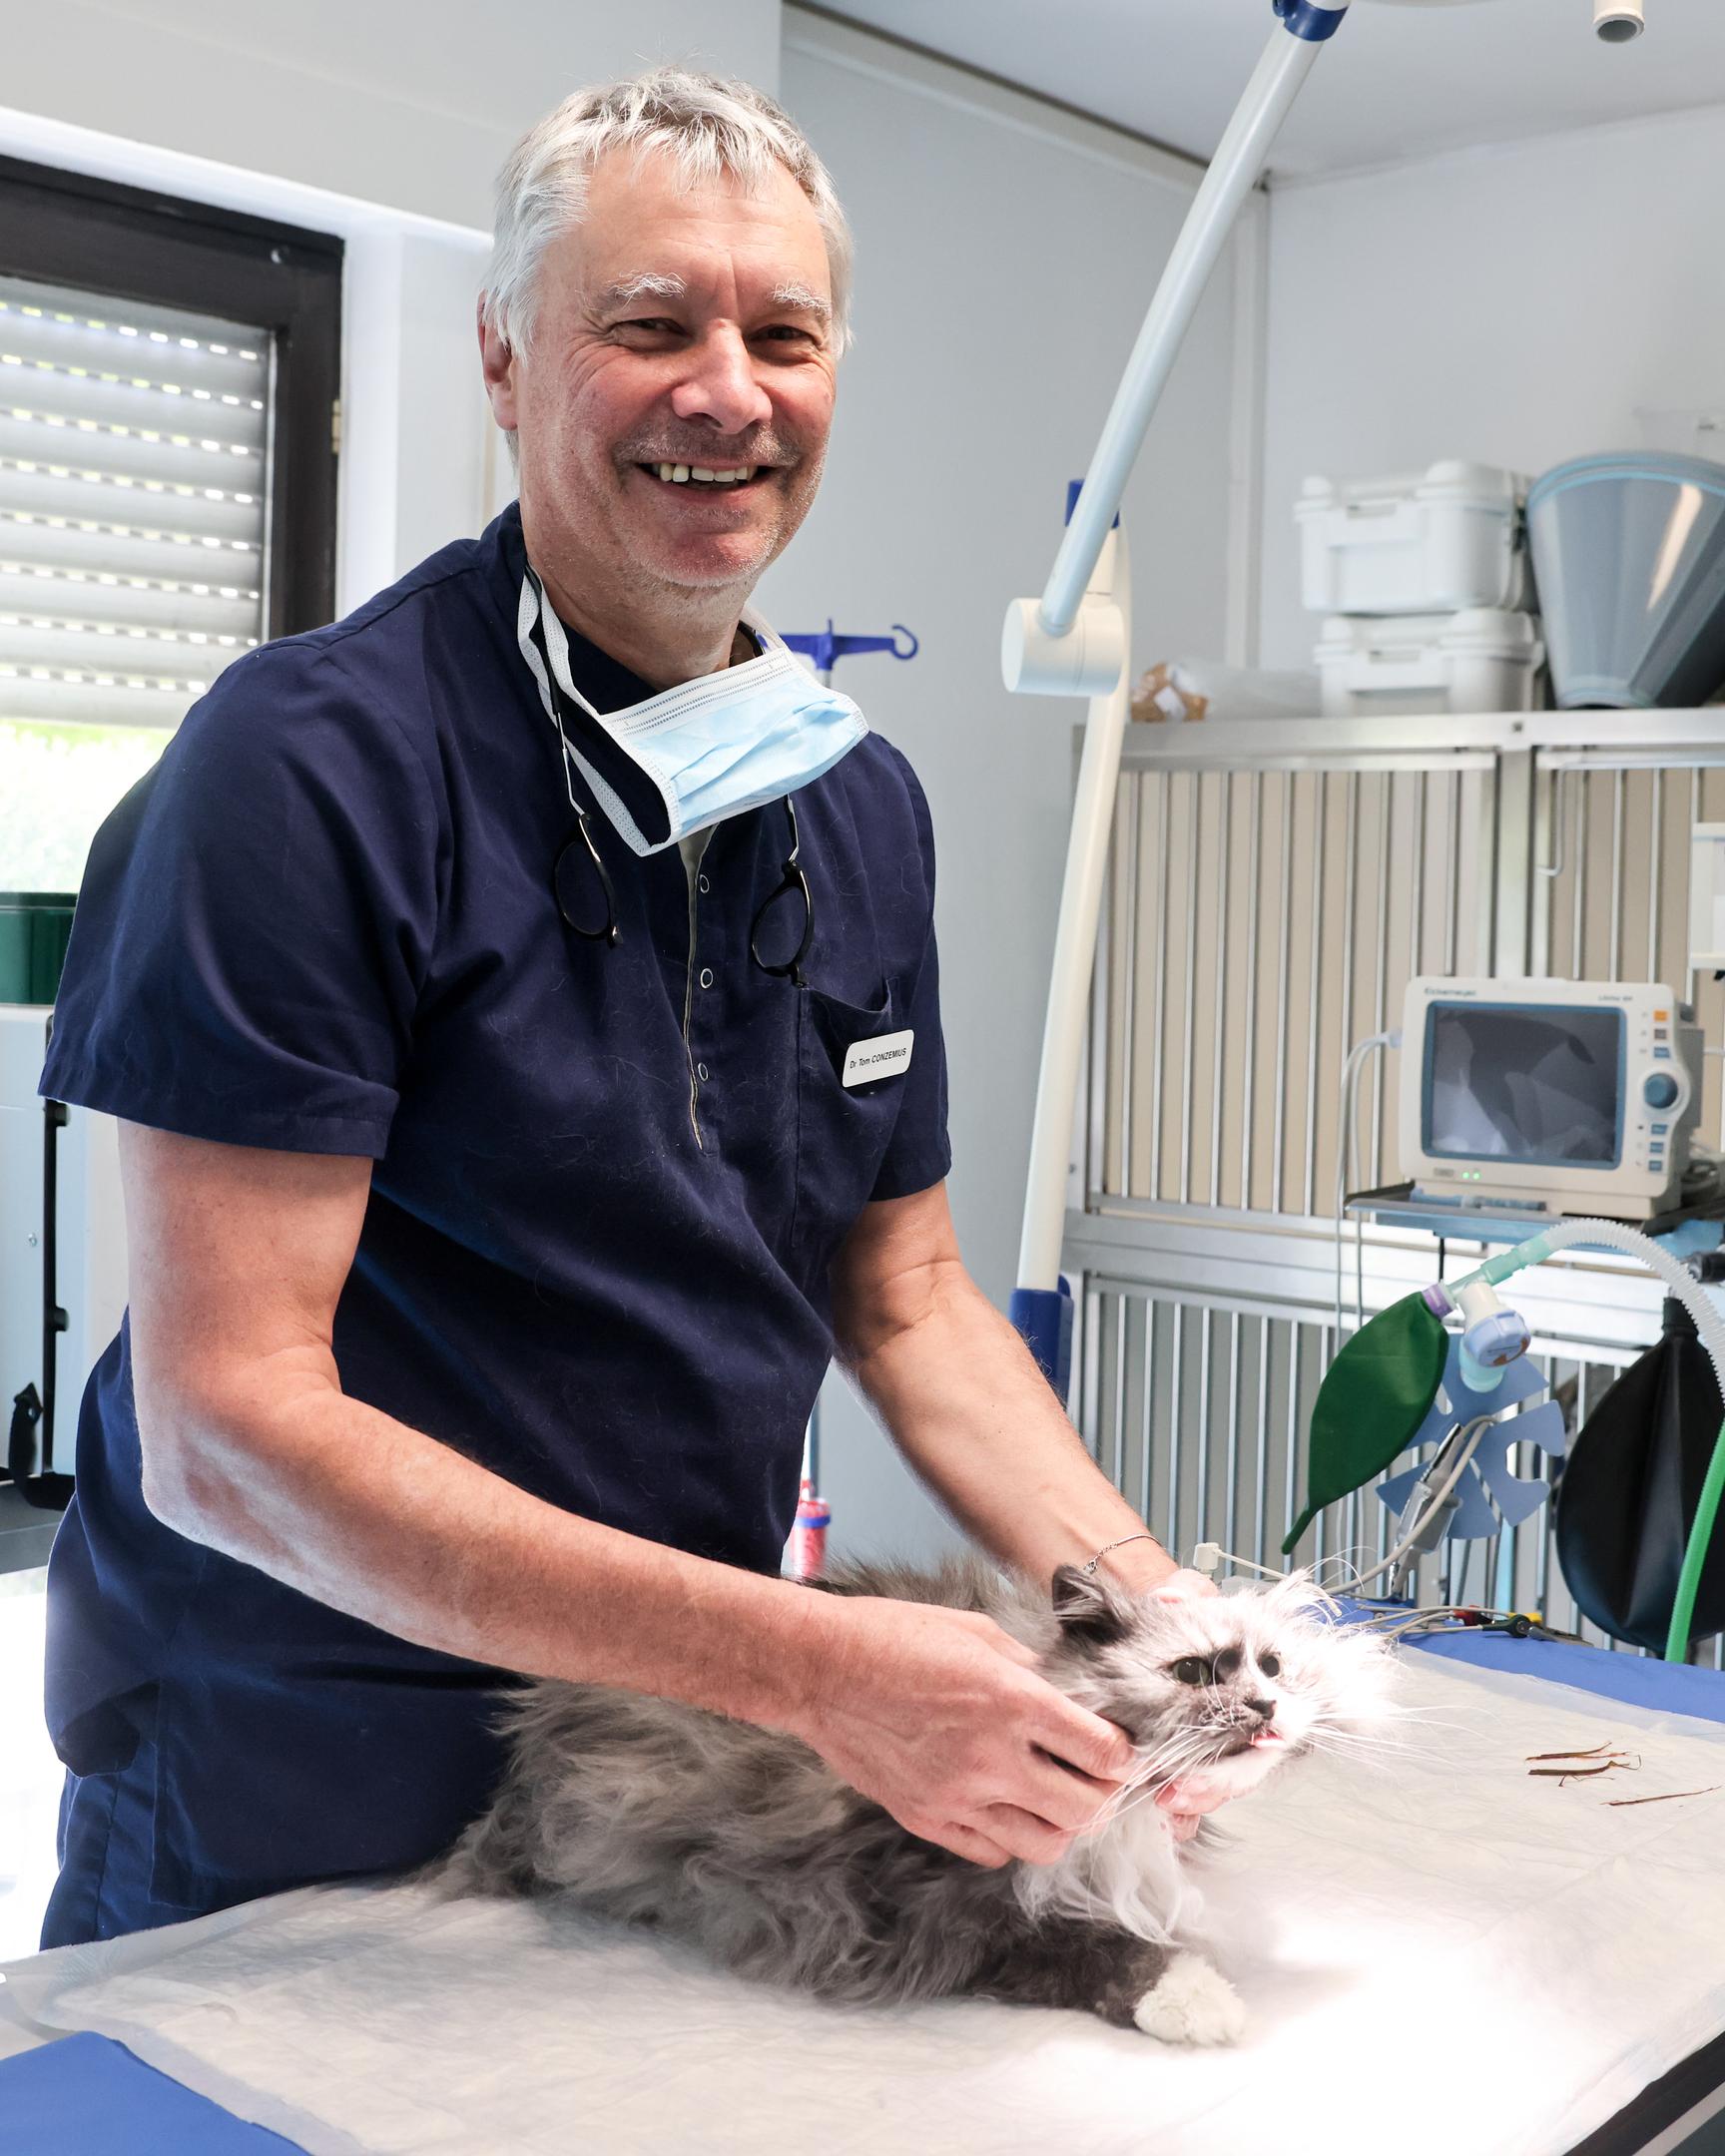 Seit 1989 führt Dr. Tom Conzemius die Notfalltierklinik in Bereldingen. Die zwölfjährige Katze hatte sich an Grashalmen verschluckt, die operativ entfernt werden mussten. 